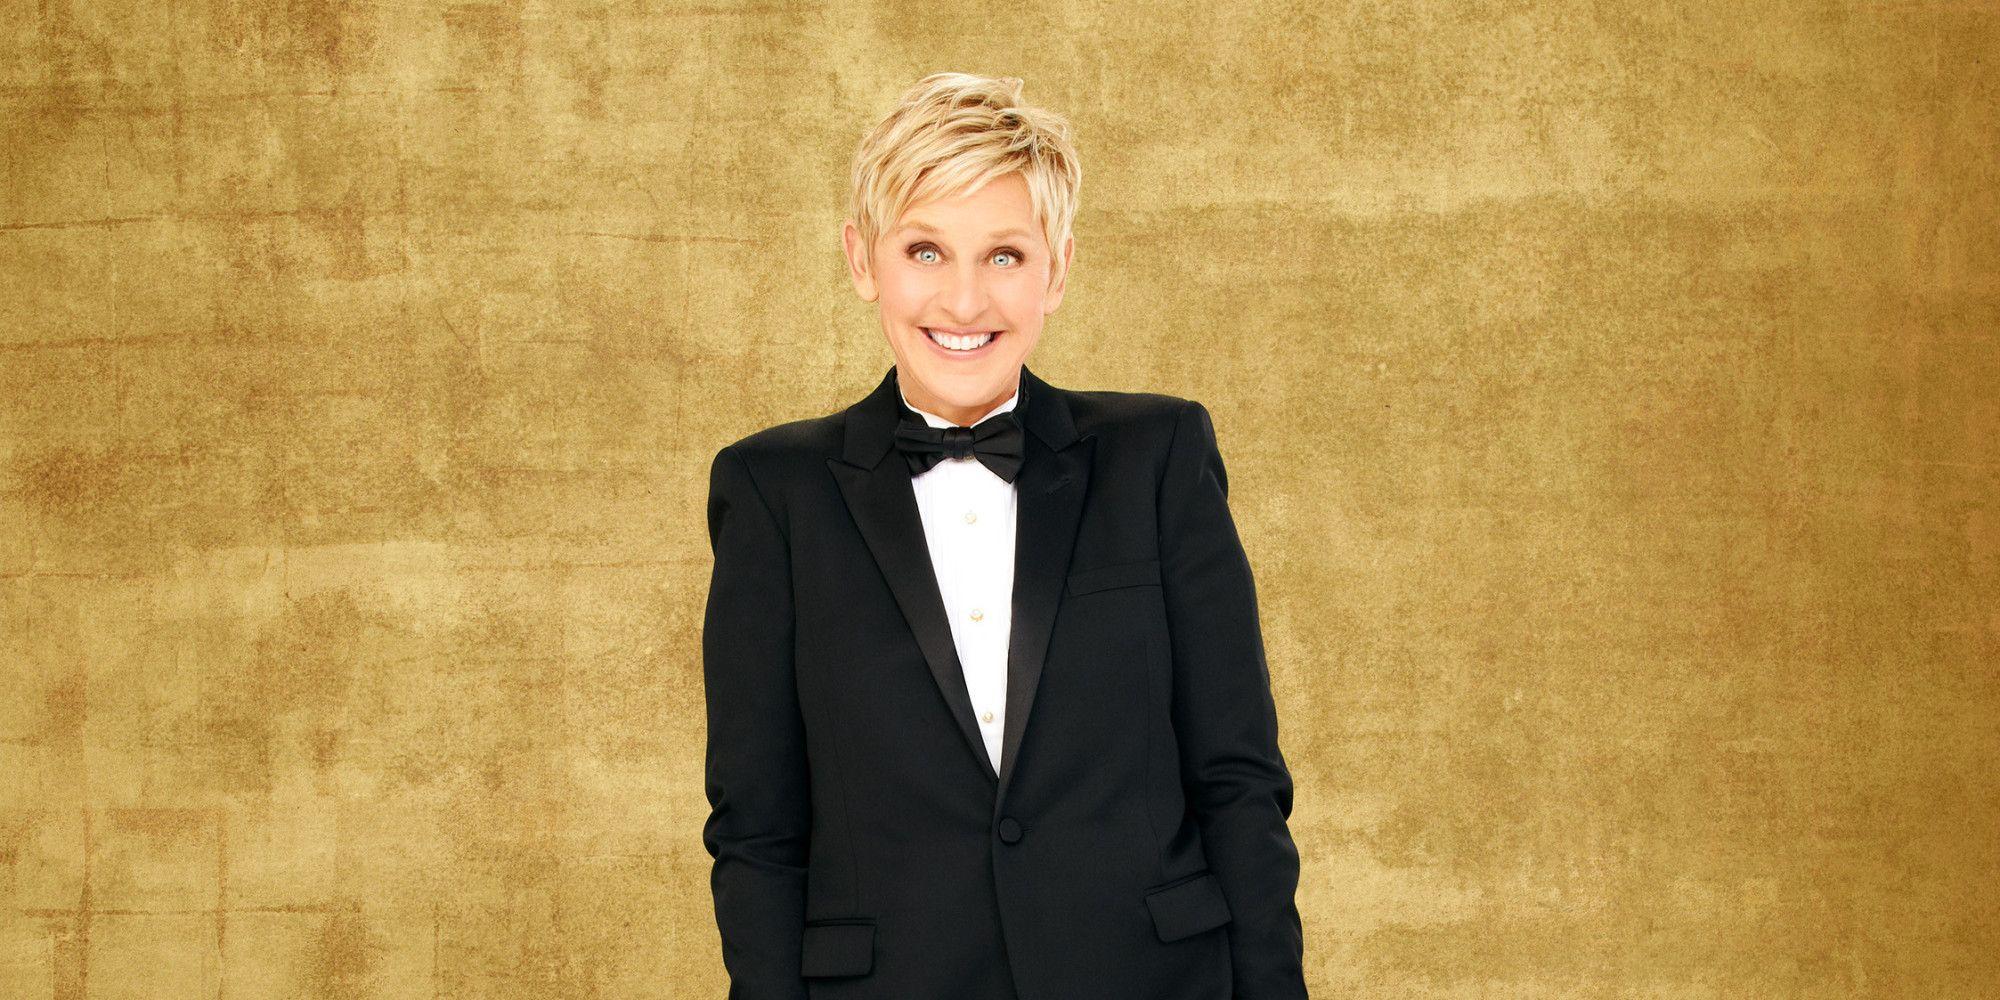 The Ellen DeGeneres Show is coming to ITV2